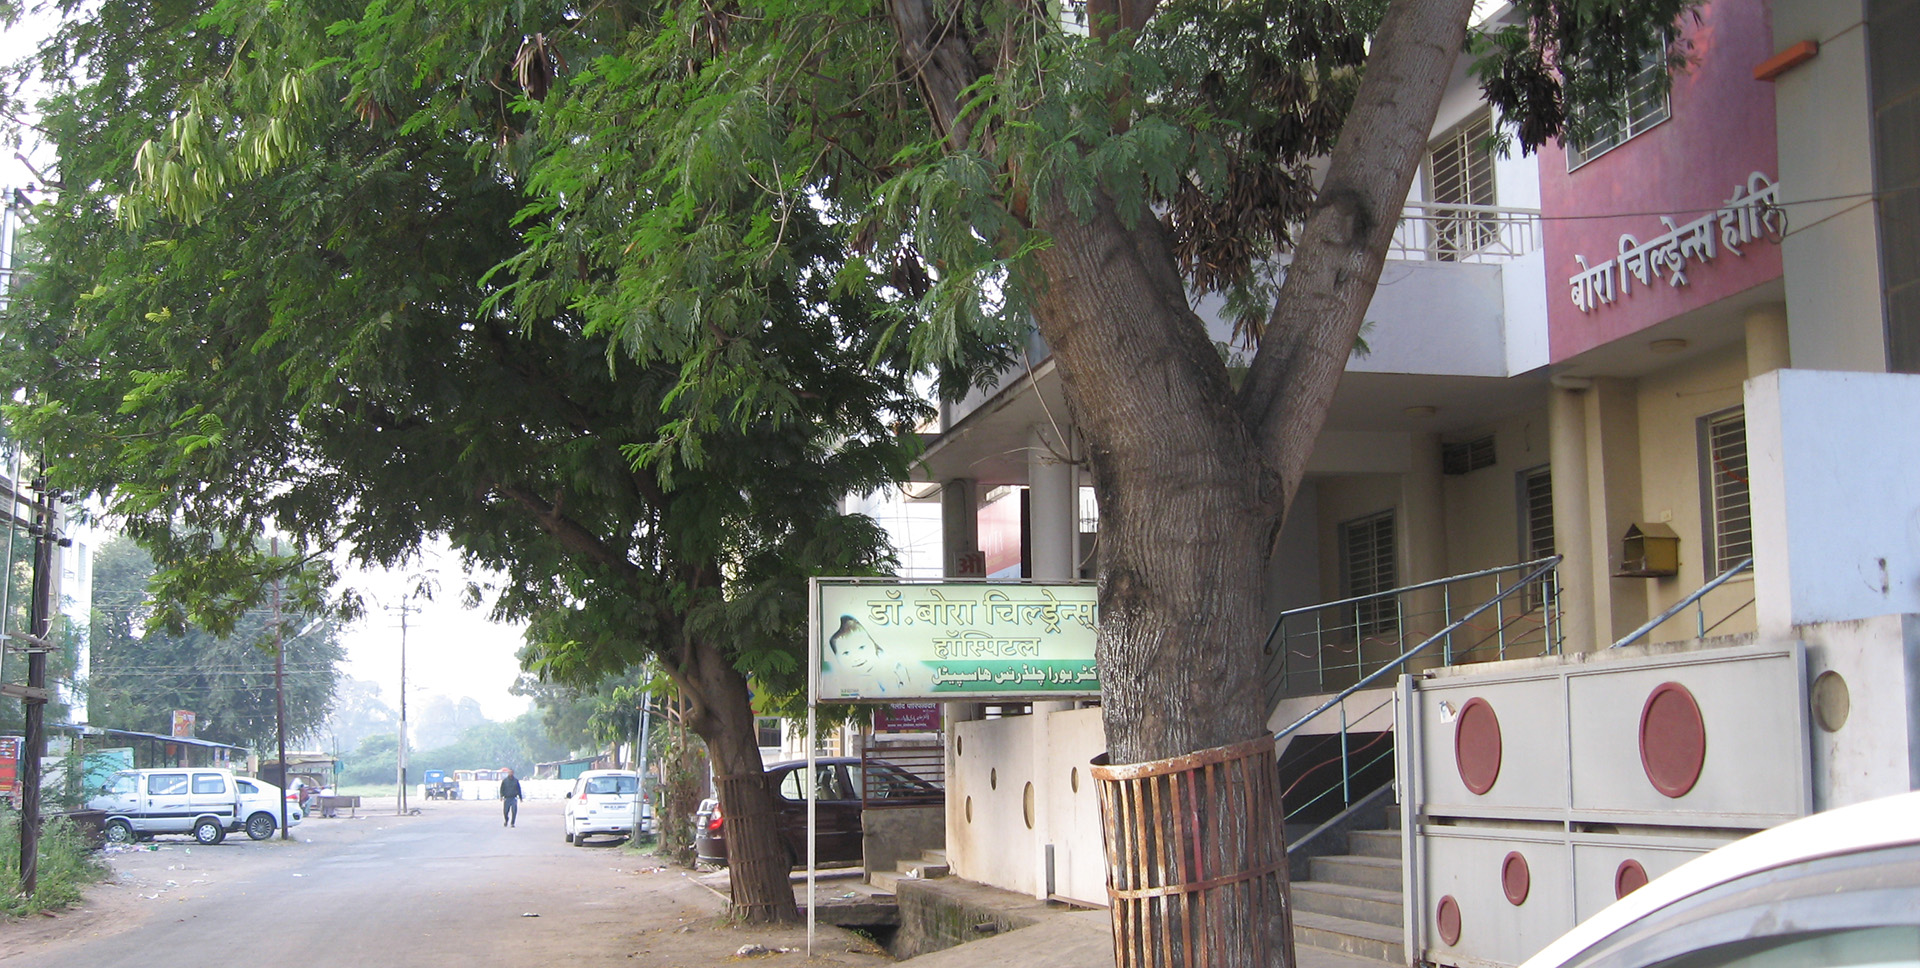 Bora Children's Hospital